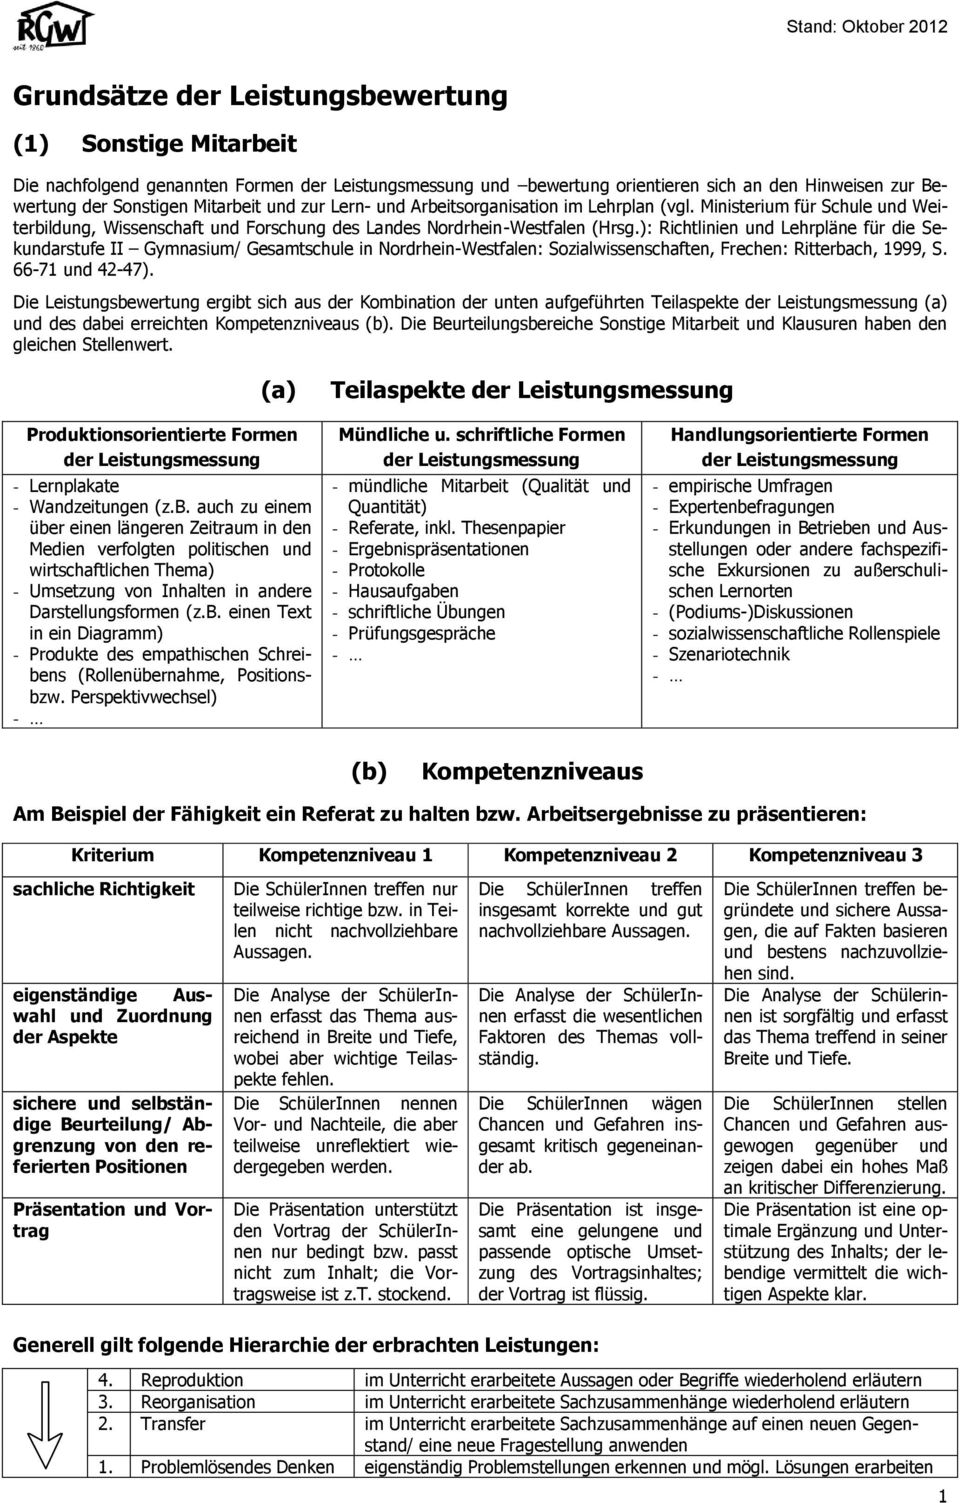 ): Richtlinien und Lehrpläne für die Sekundarstufe II Gymnasium/ Gesamtschule in Nordrhein-Westfalen: Sozialwissenschaften, Frechen: Ritterbach, 1999, S. -71 und -7).